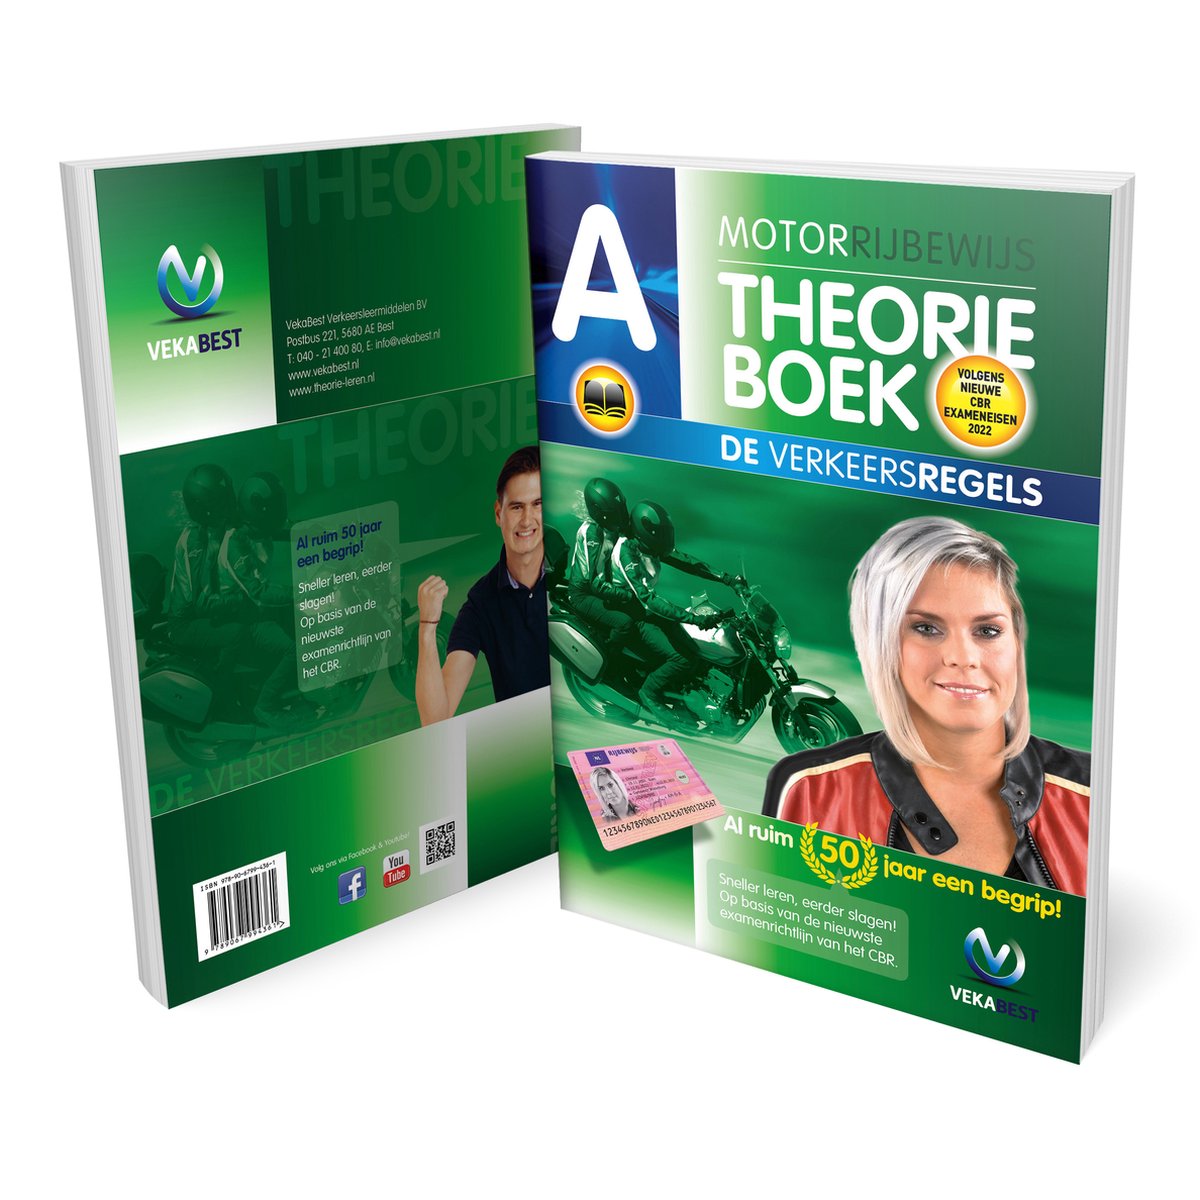 Motor Theorieboek 2022 - Motor Theorie Boek Rijbewijs A Nederland - VekaBest